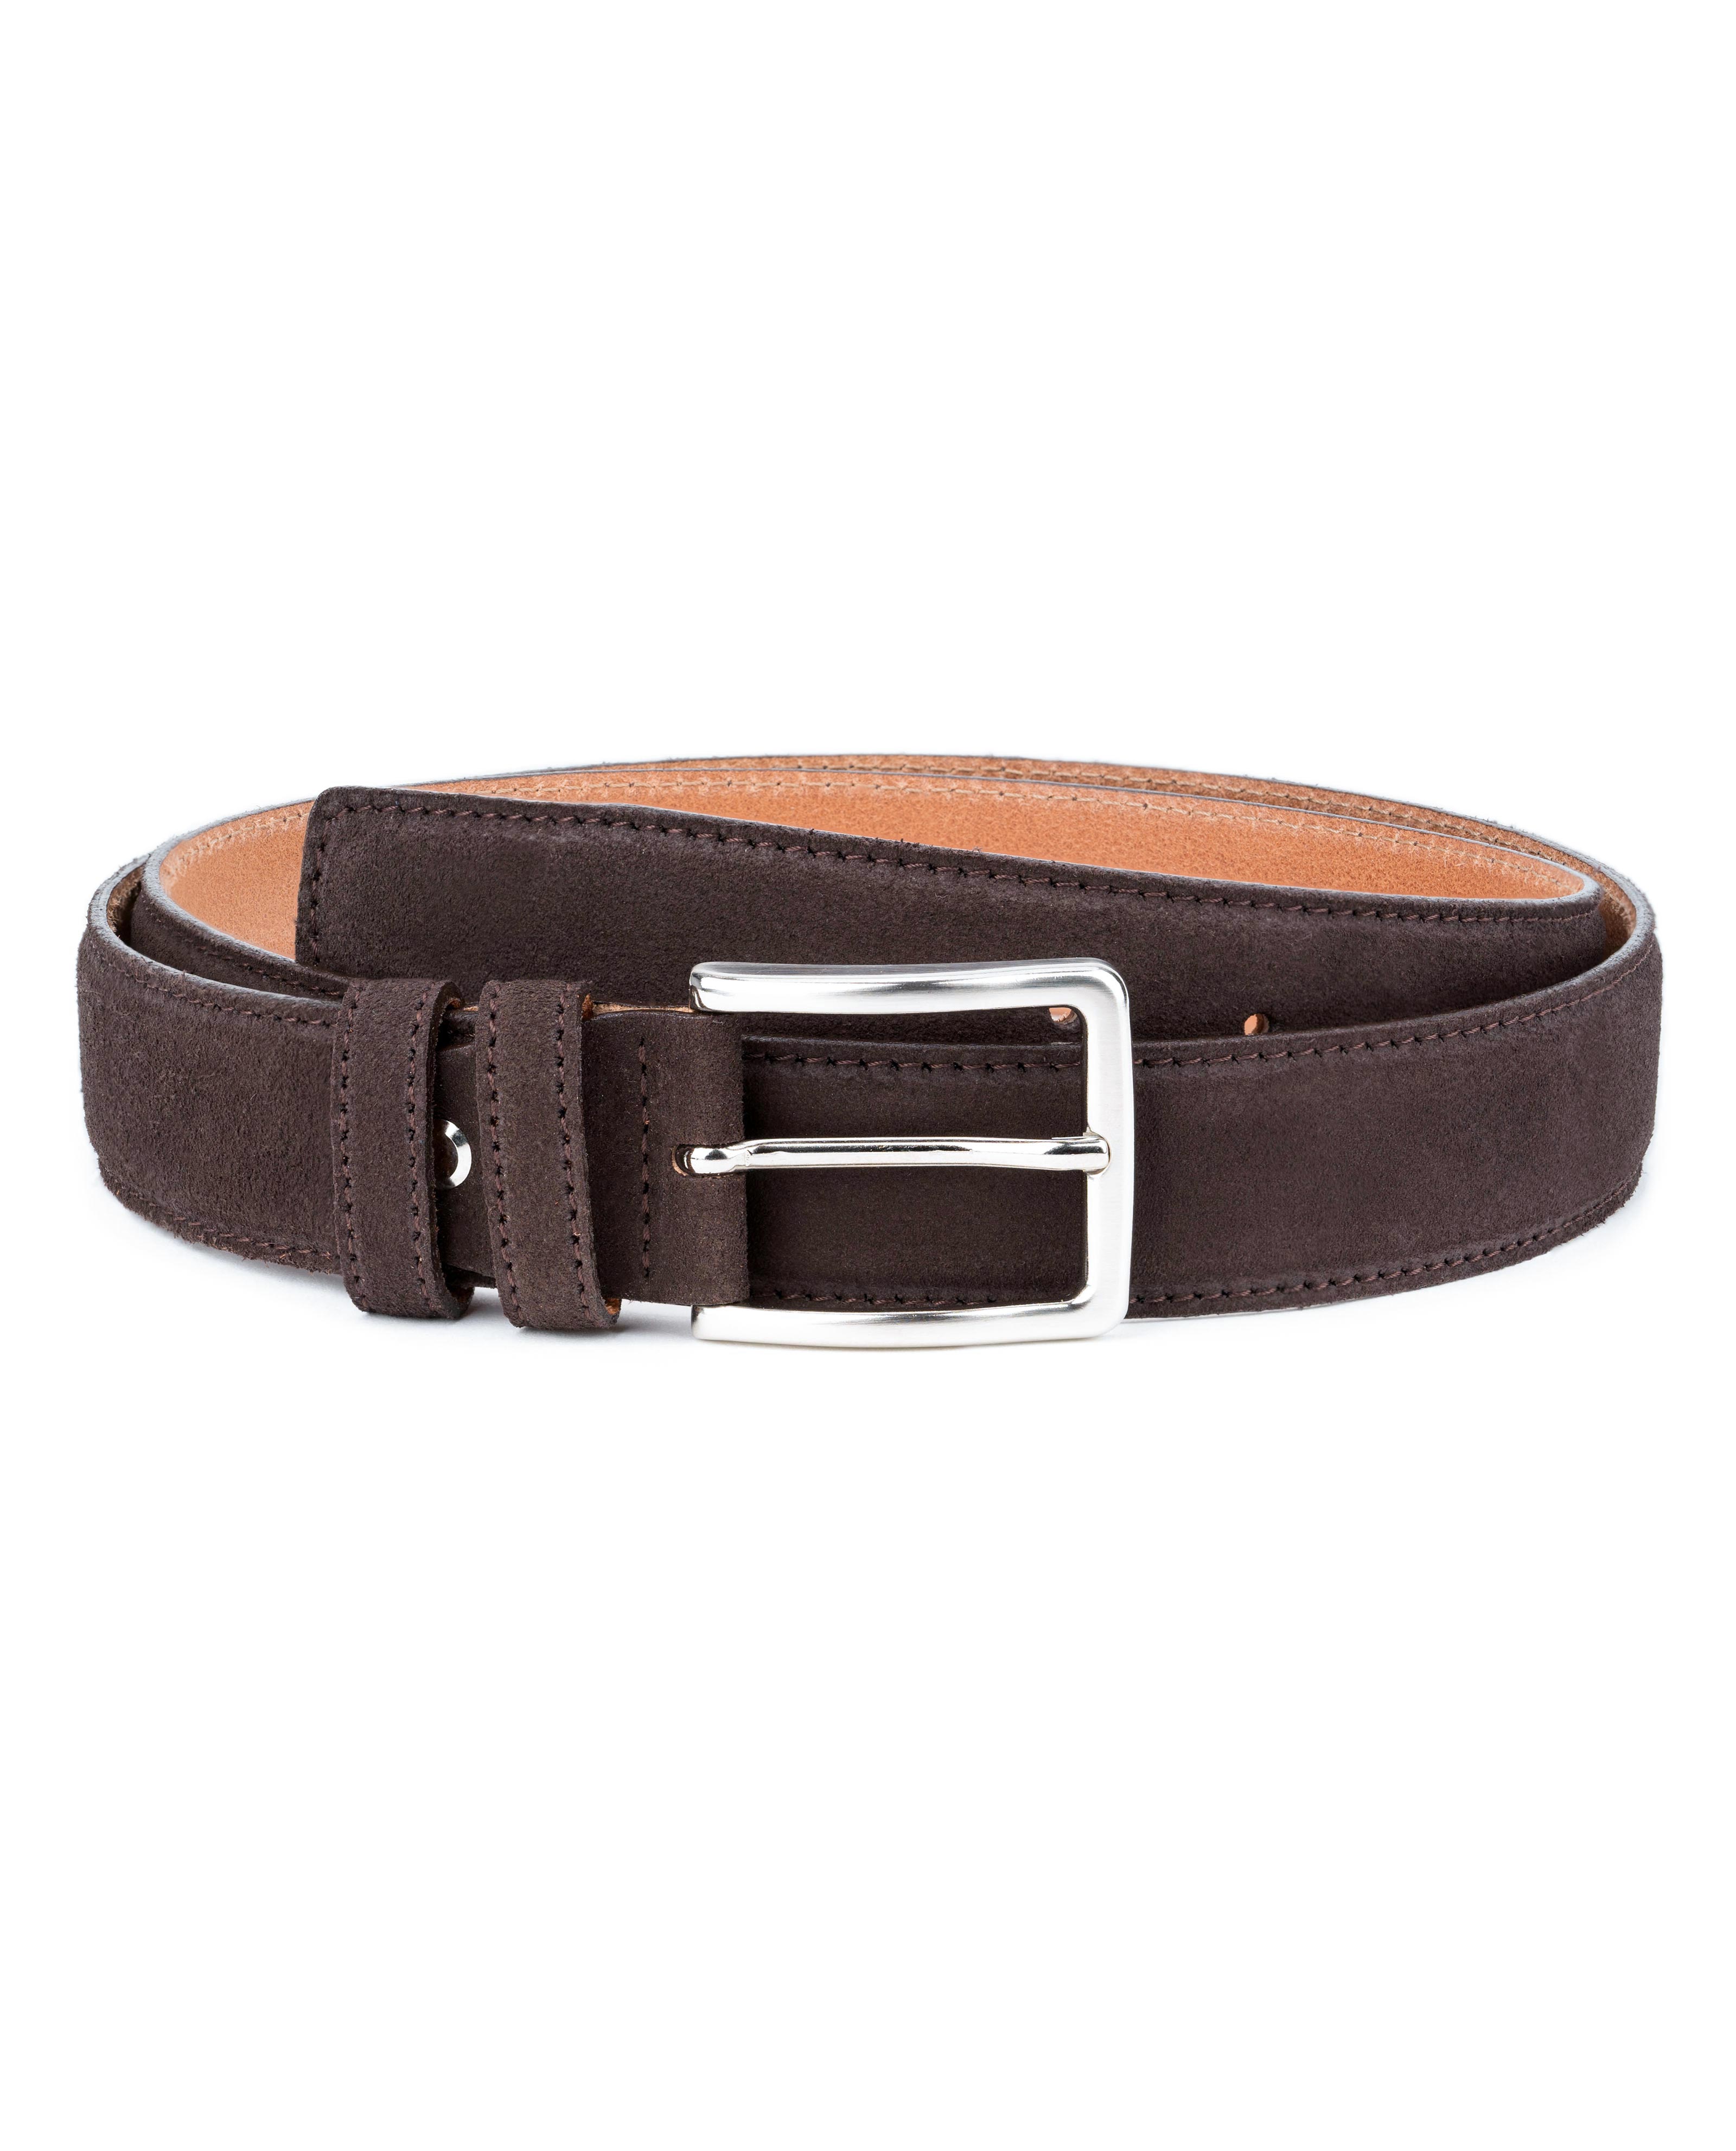 Buy Dark Brown Suede Belt | Real Leather | LeatherBeltsOnline.com